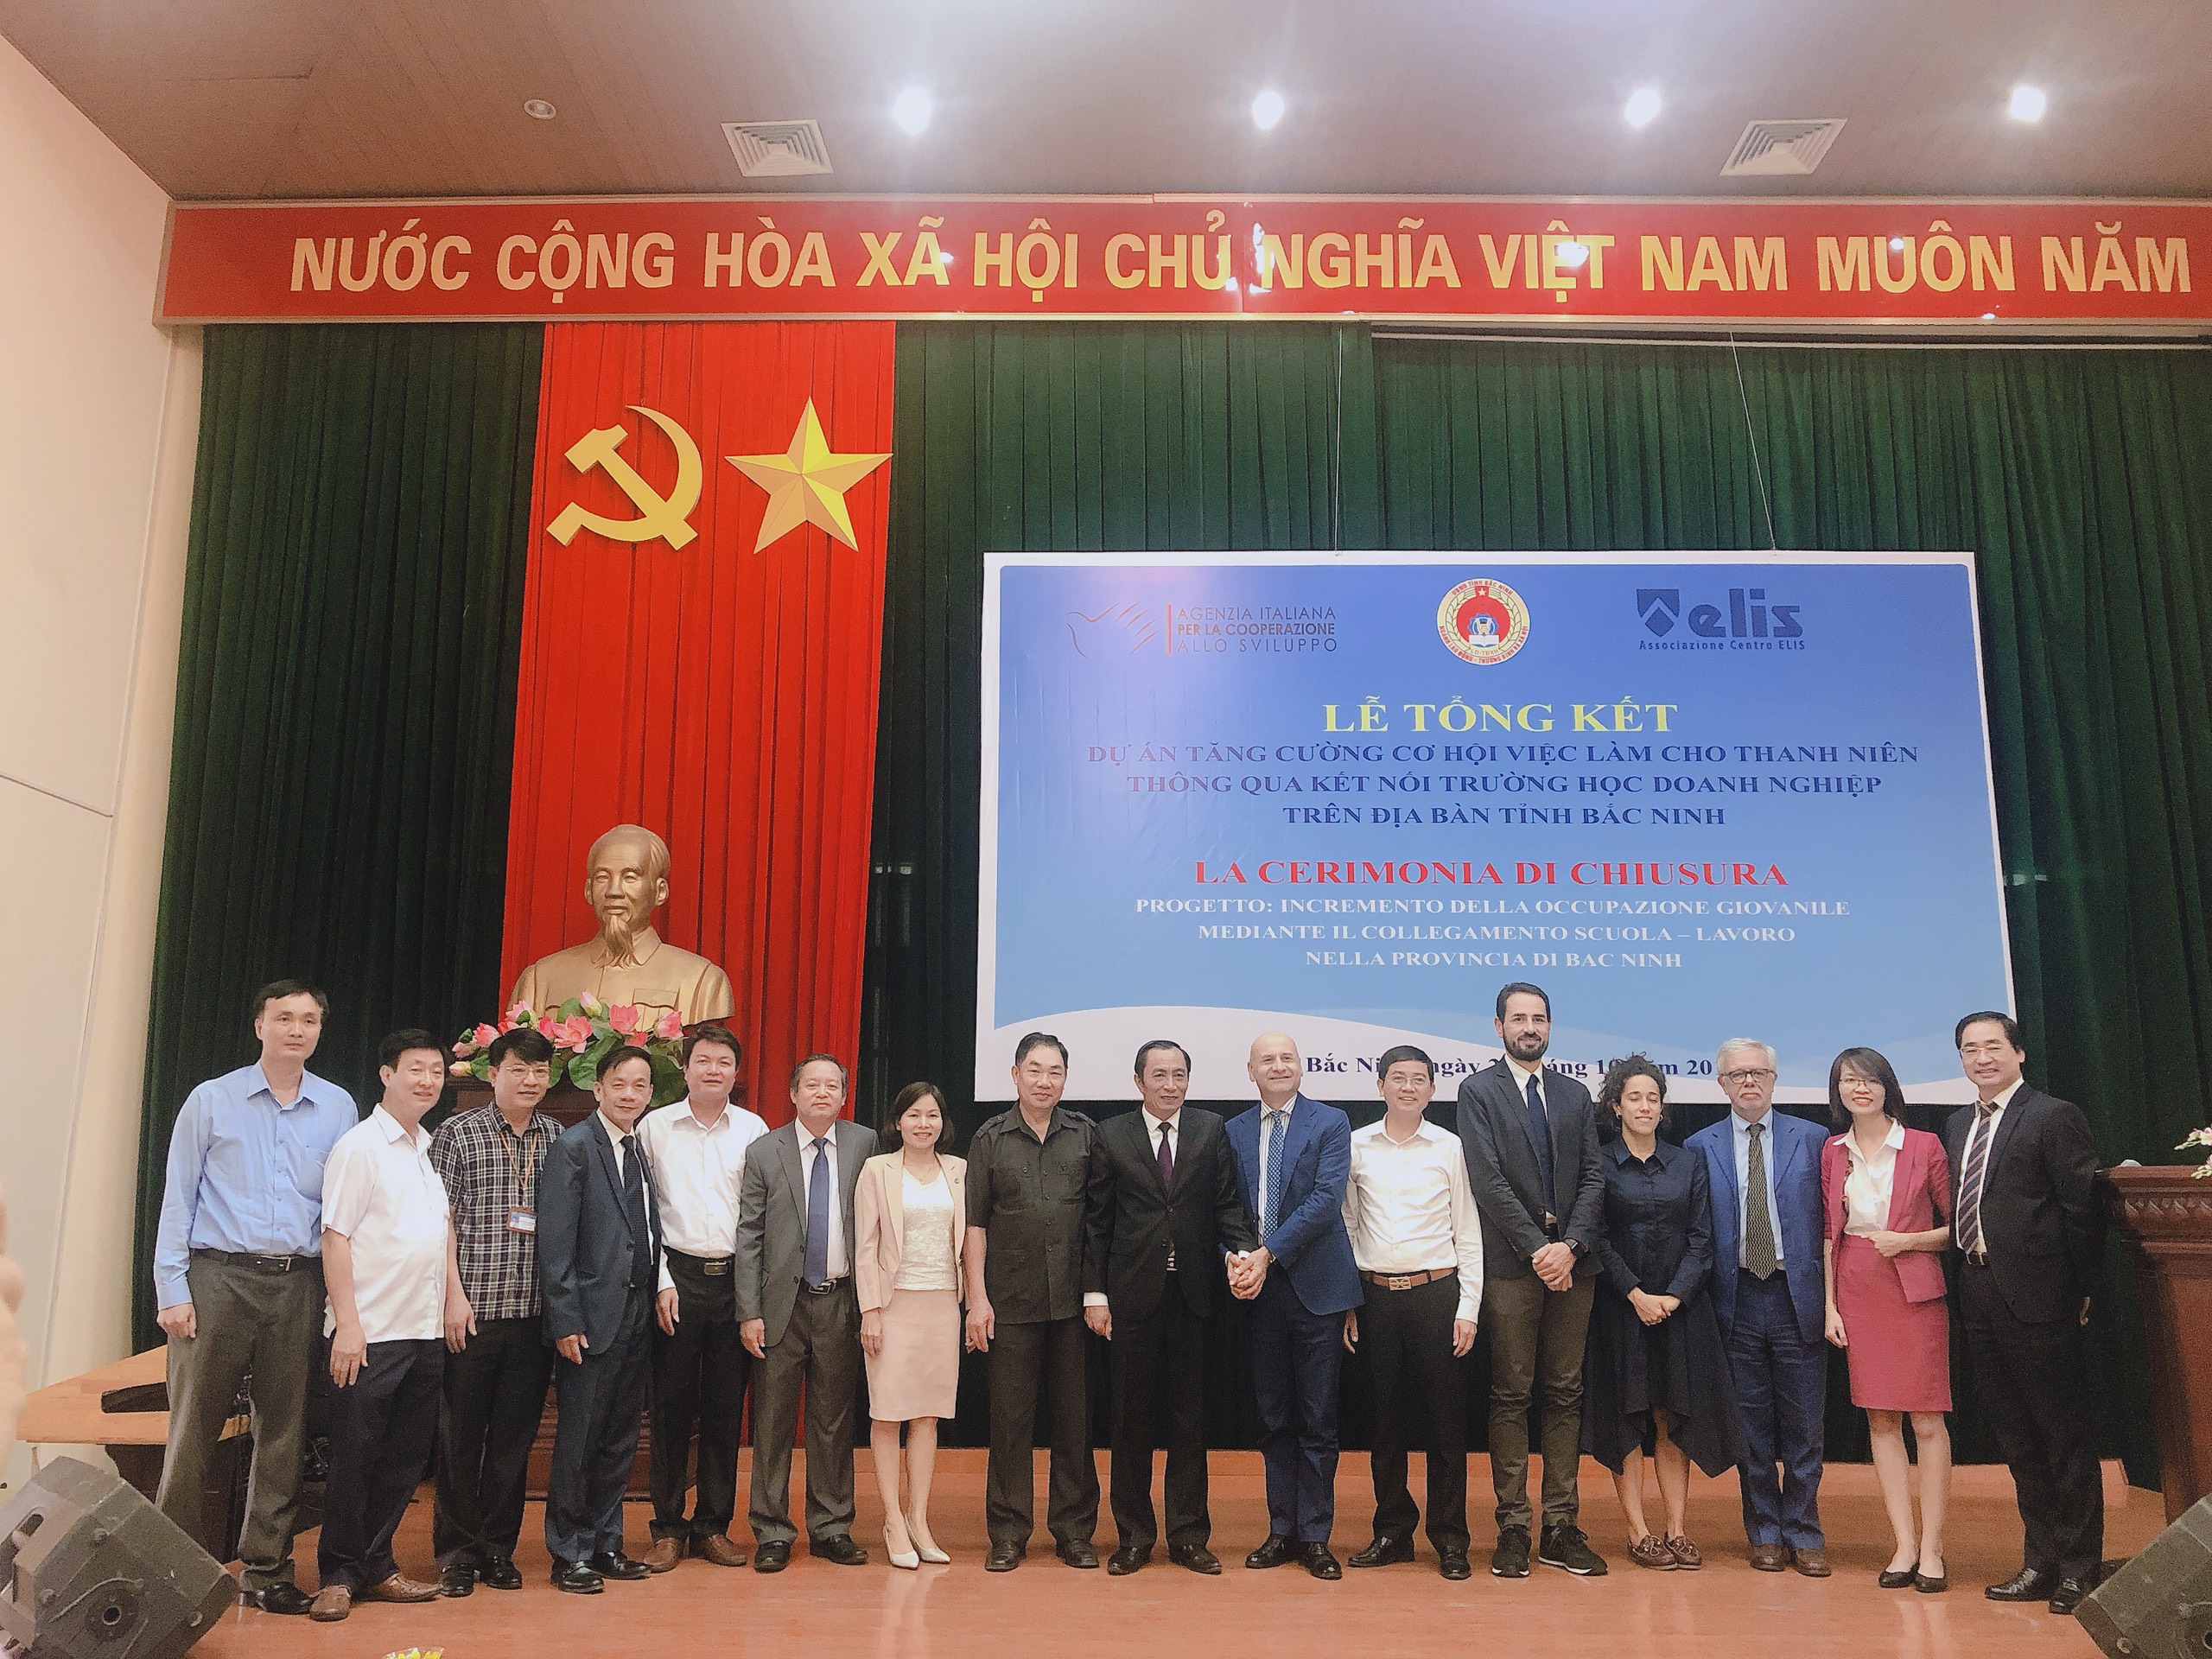 Lễ tổng kết dự án “Tăng cường cơ hội việc làm cho thanh niên thông qua kết nối trường học – doanh nghiệp trên địa bàn tỉnh Bắc Ninh” giai đoạn 2016-2019